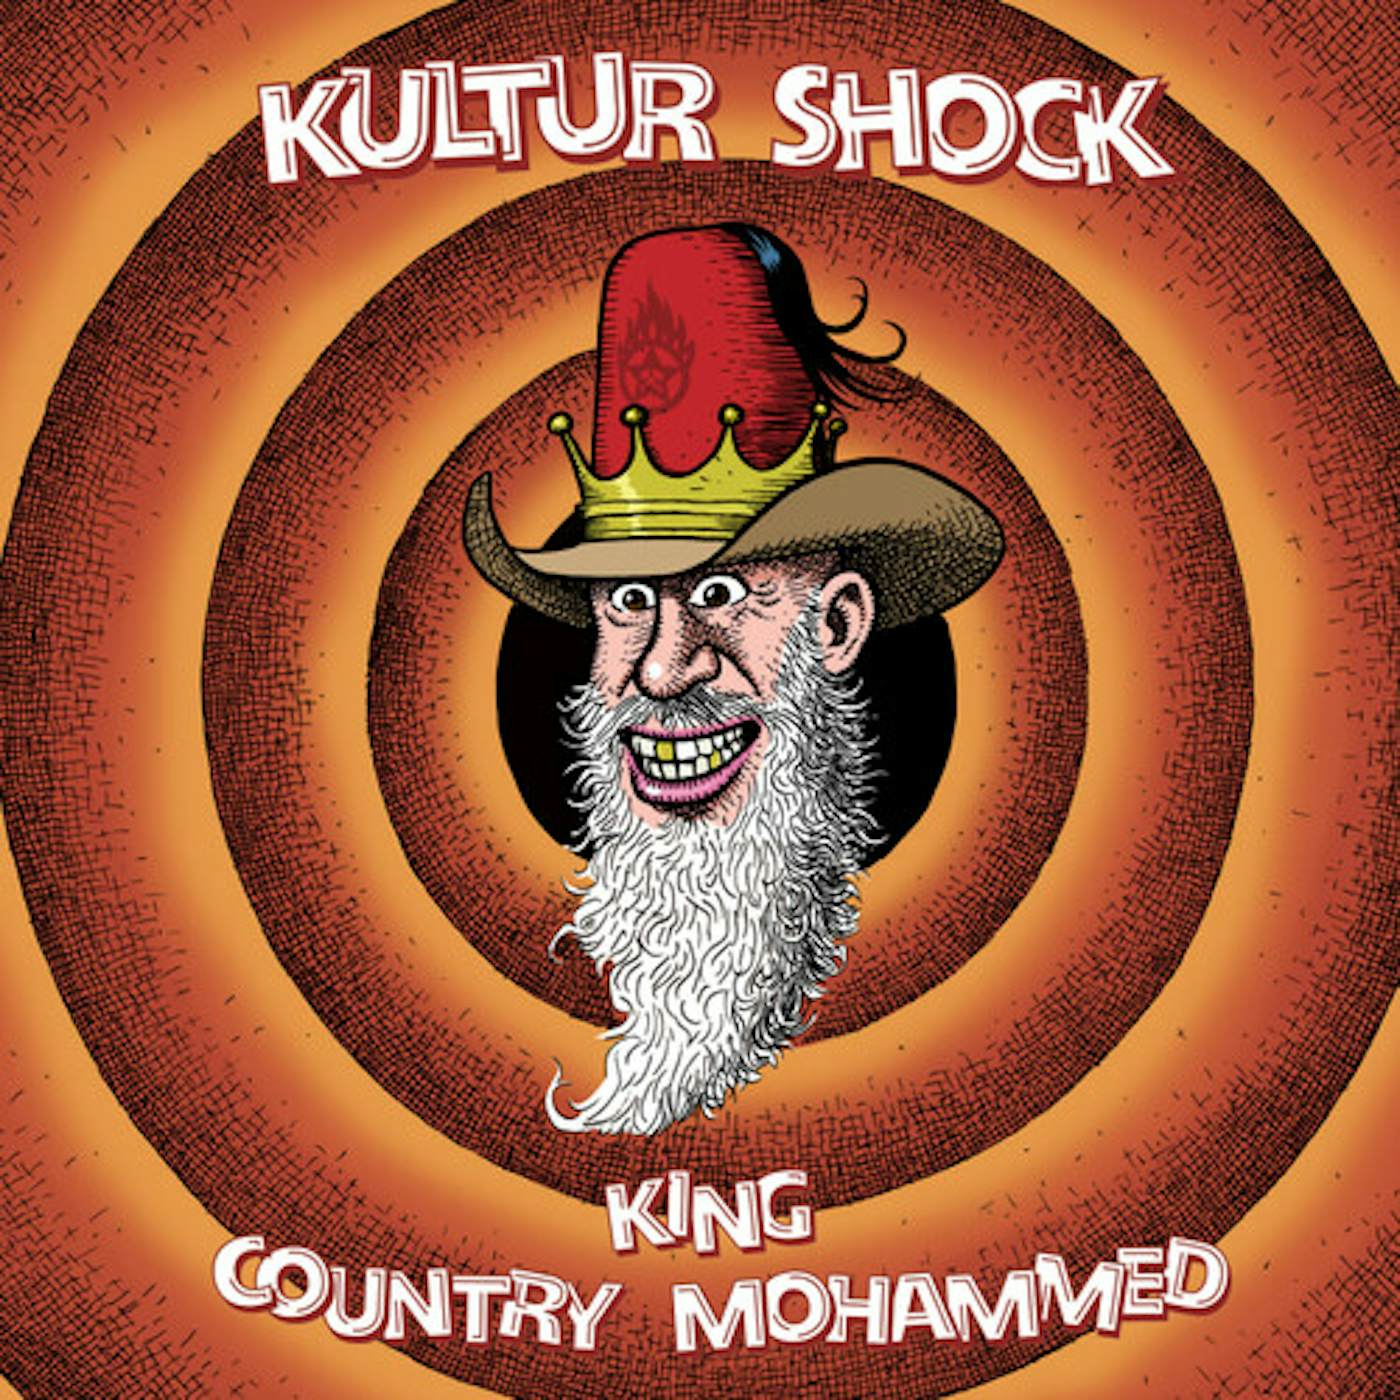 Kultur Shock KING / COUNTRY MOHAMMED Vinyl Record